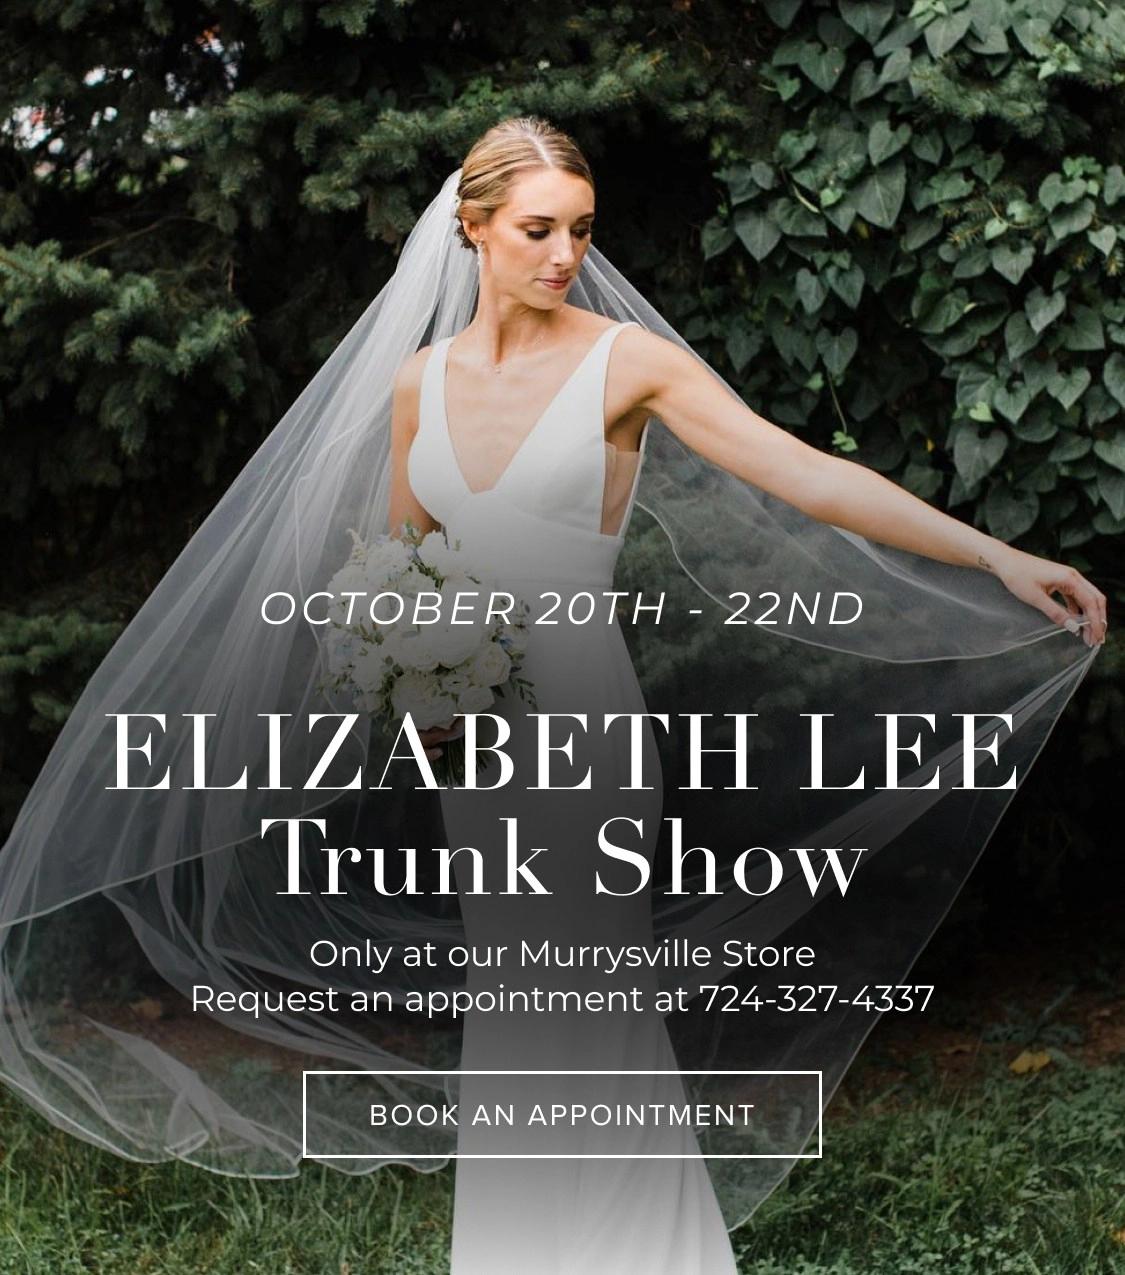 Elizabeth lee trunk show banner mobile